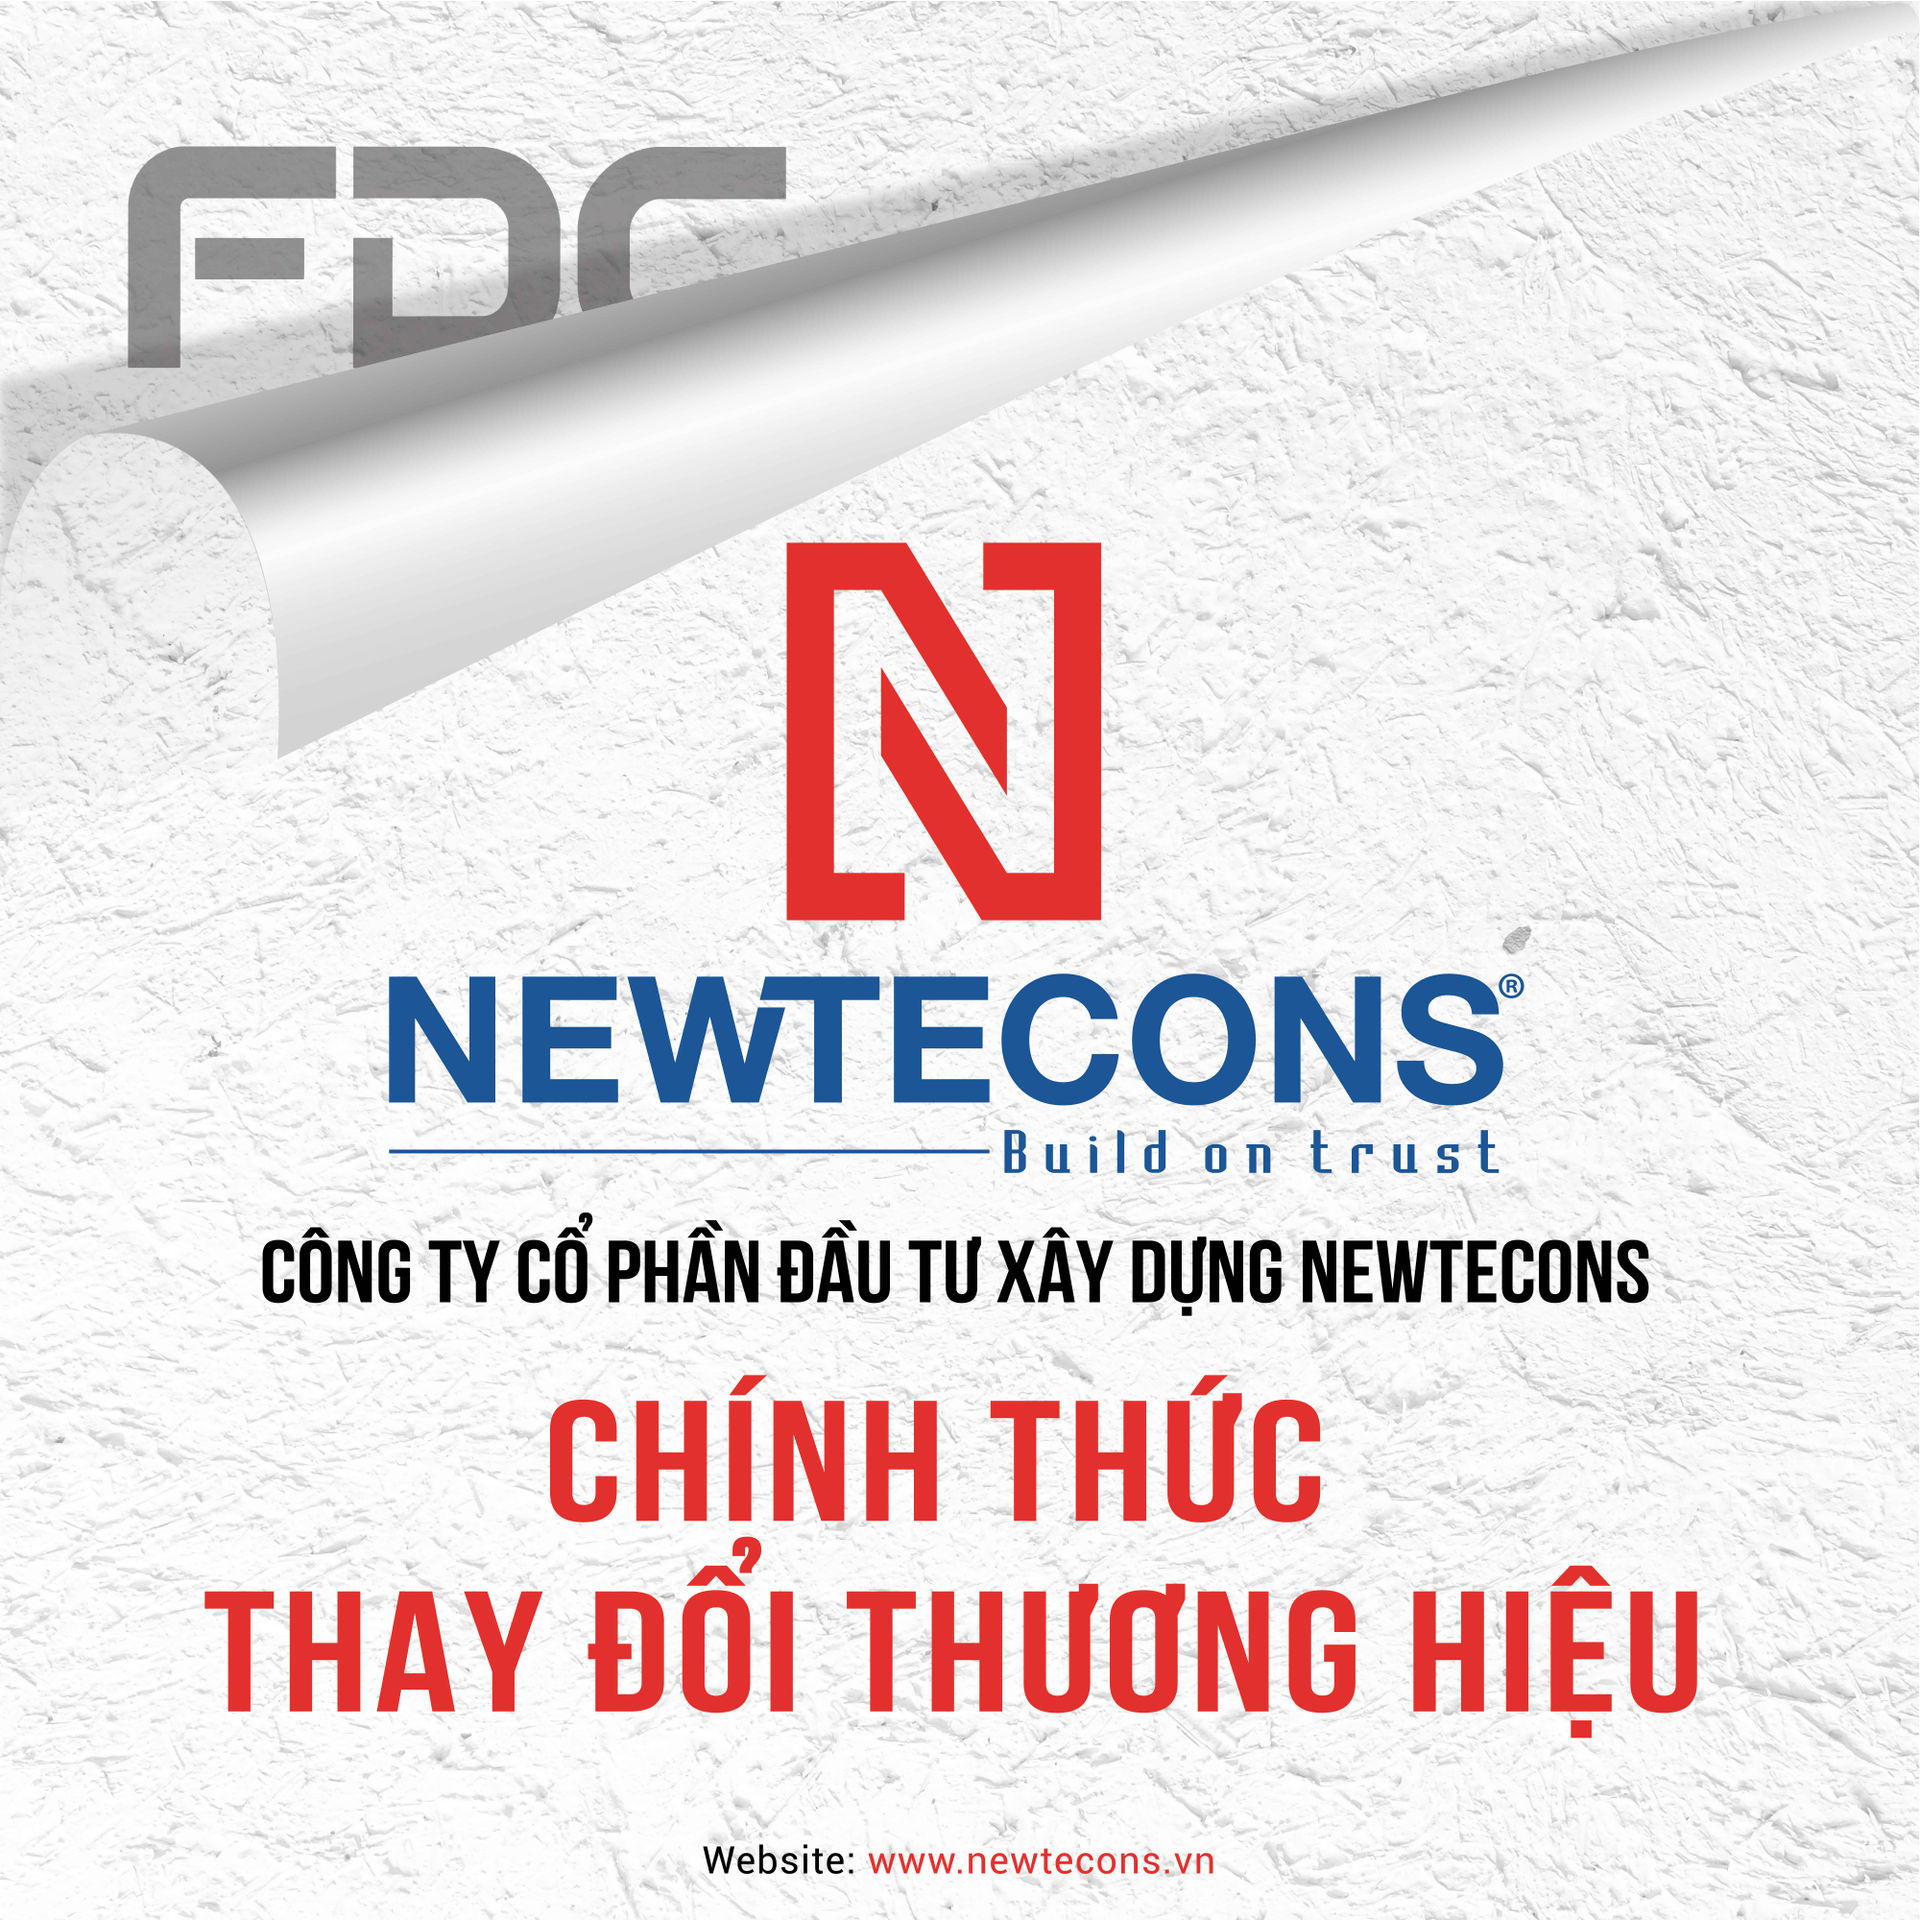 Công ty xây dựng FDC đổi tên thành Newtecons